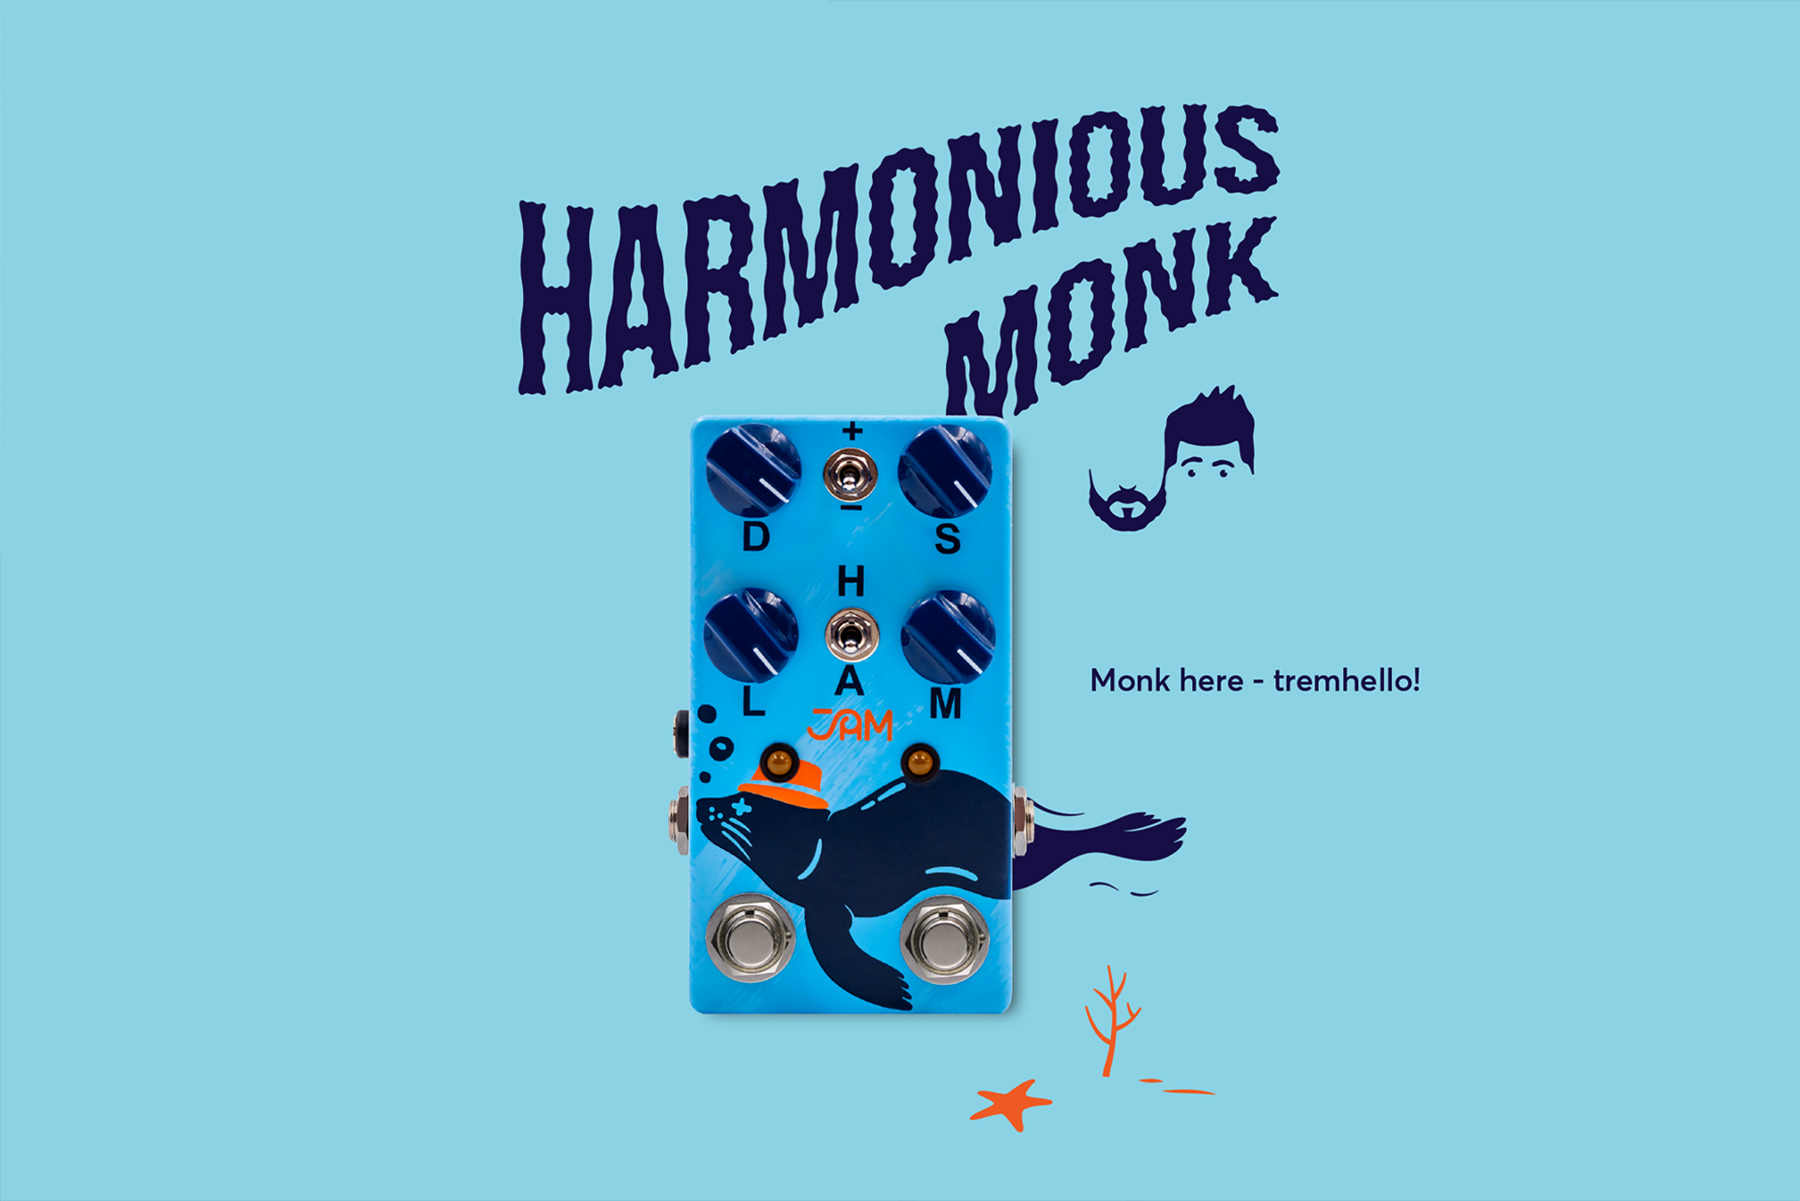 Harmonious Monk